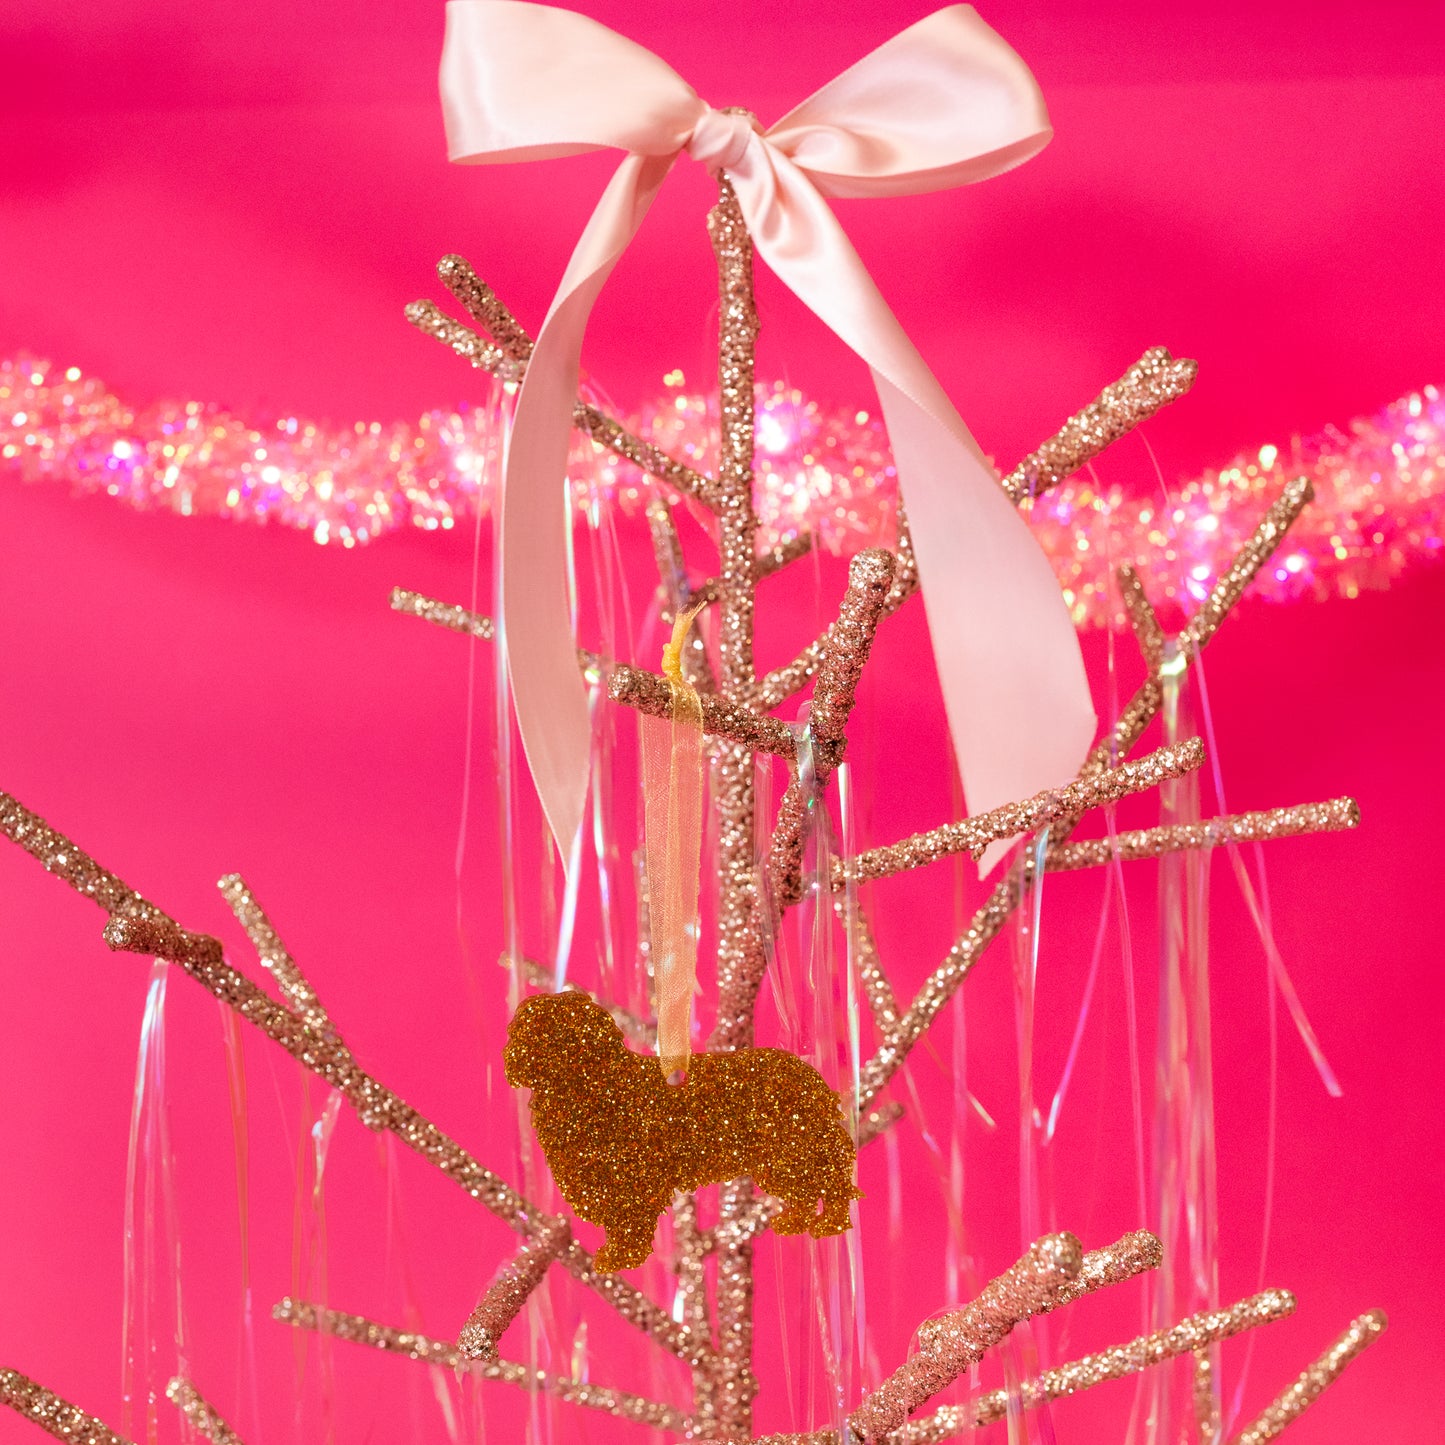 Glitter Acrylic Dog Ornaments - Gasp